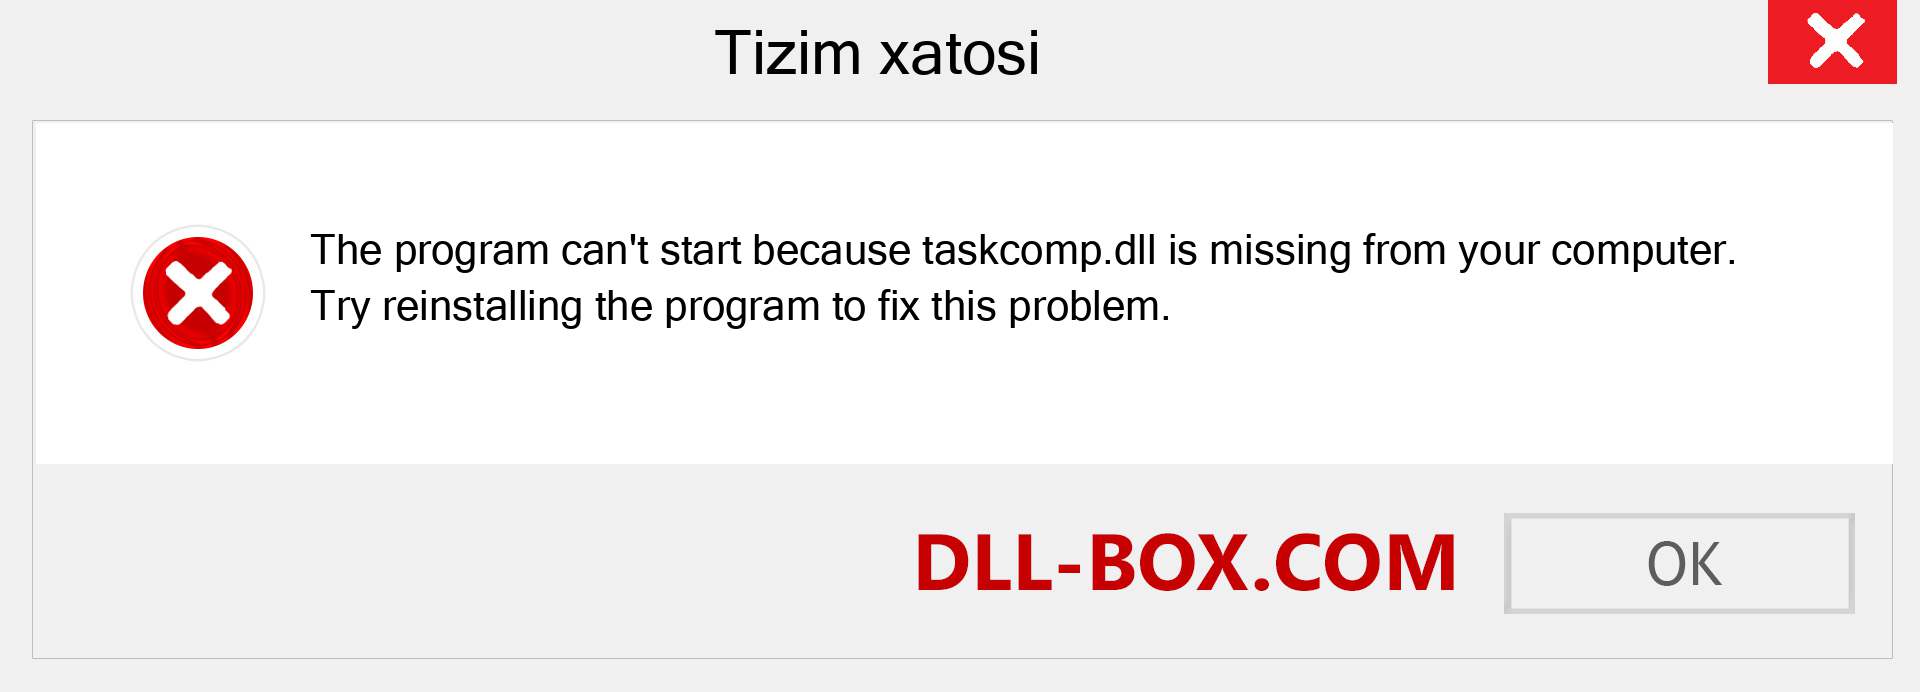 taskcomp.dll fayli yo'qolganmi?. Windows 7, 8, 10 uchun yuklab olish - Windowsda taskcomp dll etishmayotgan xatoni tuzating, rasmlar, rasmlar